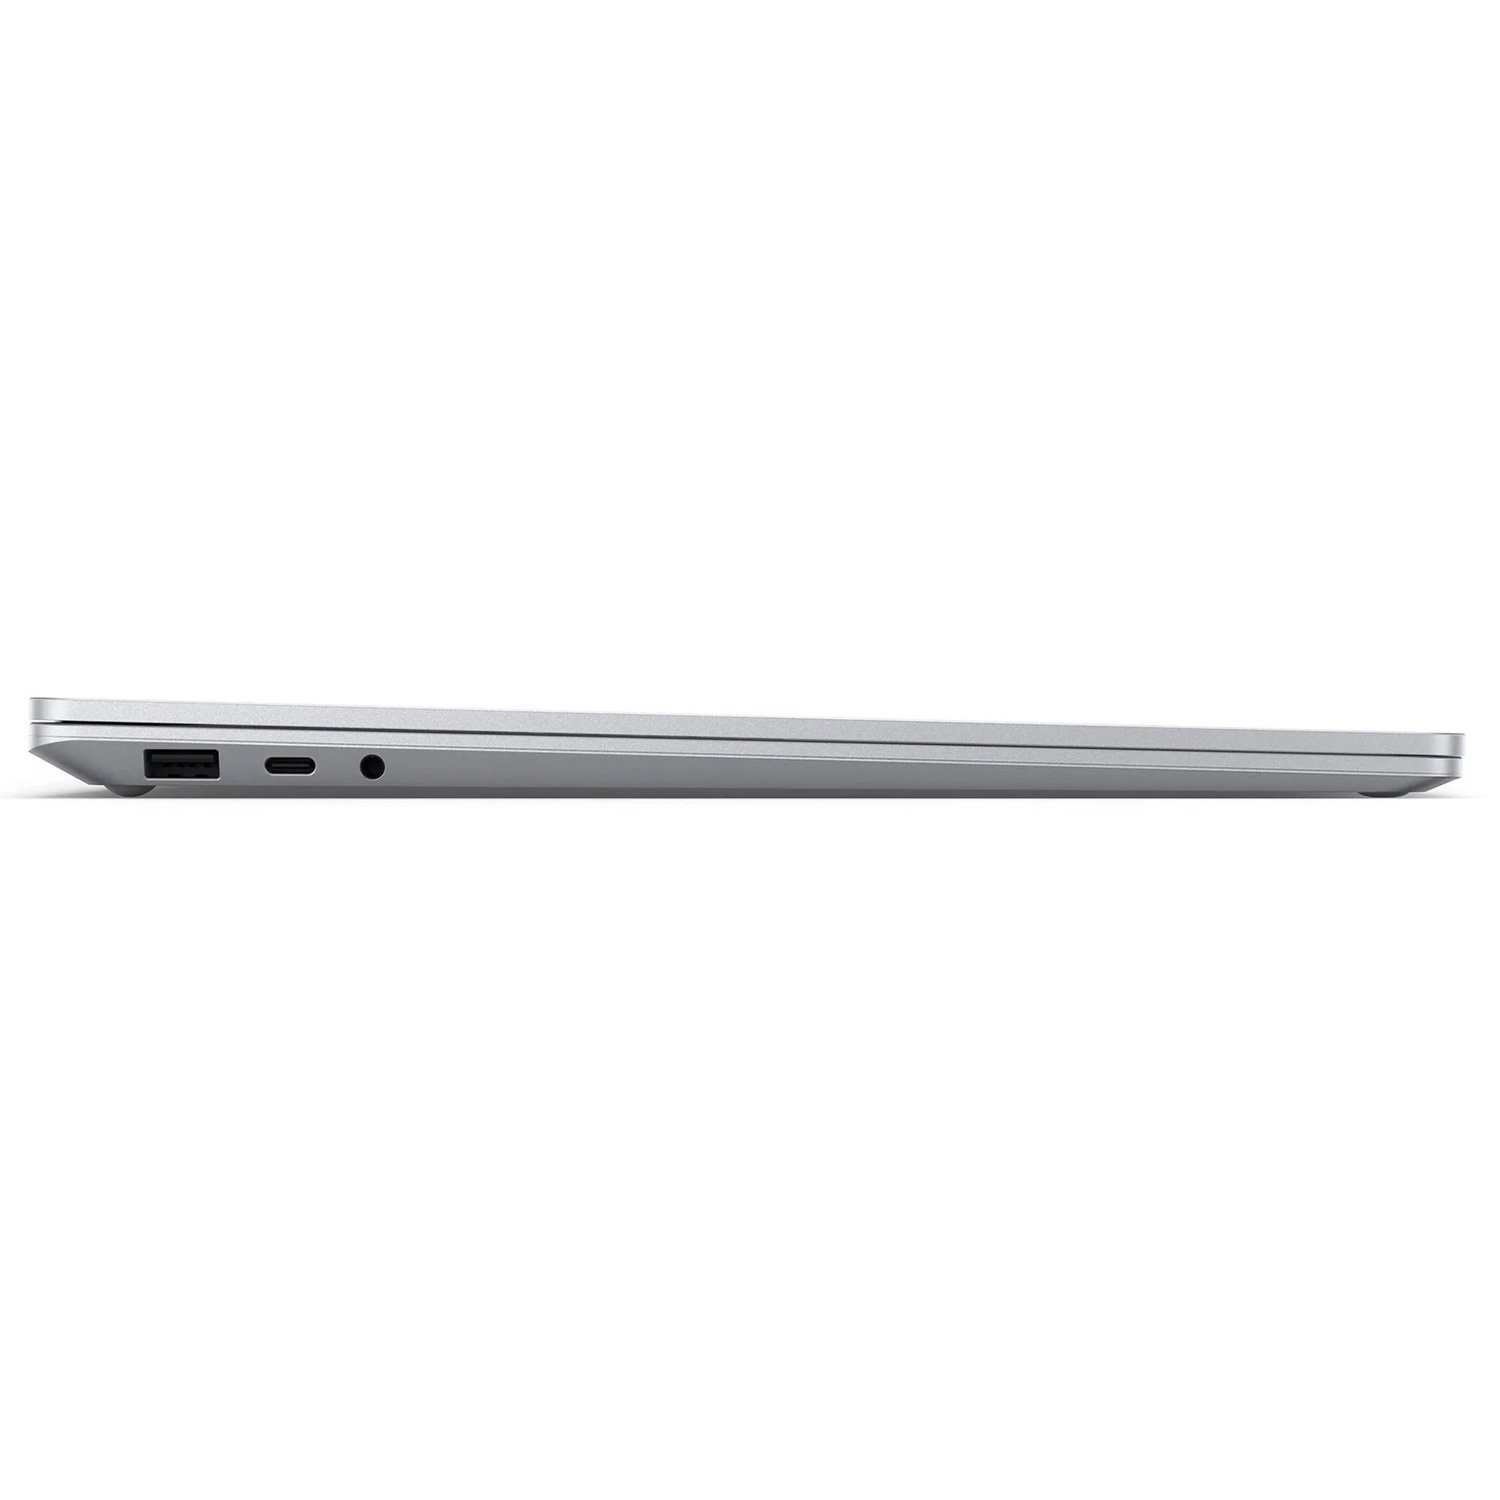 سرفیس لپ تاپ 4 مایکروسافت 15 اینچ  Ryzen 7-8GB-512GB 